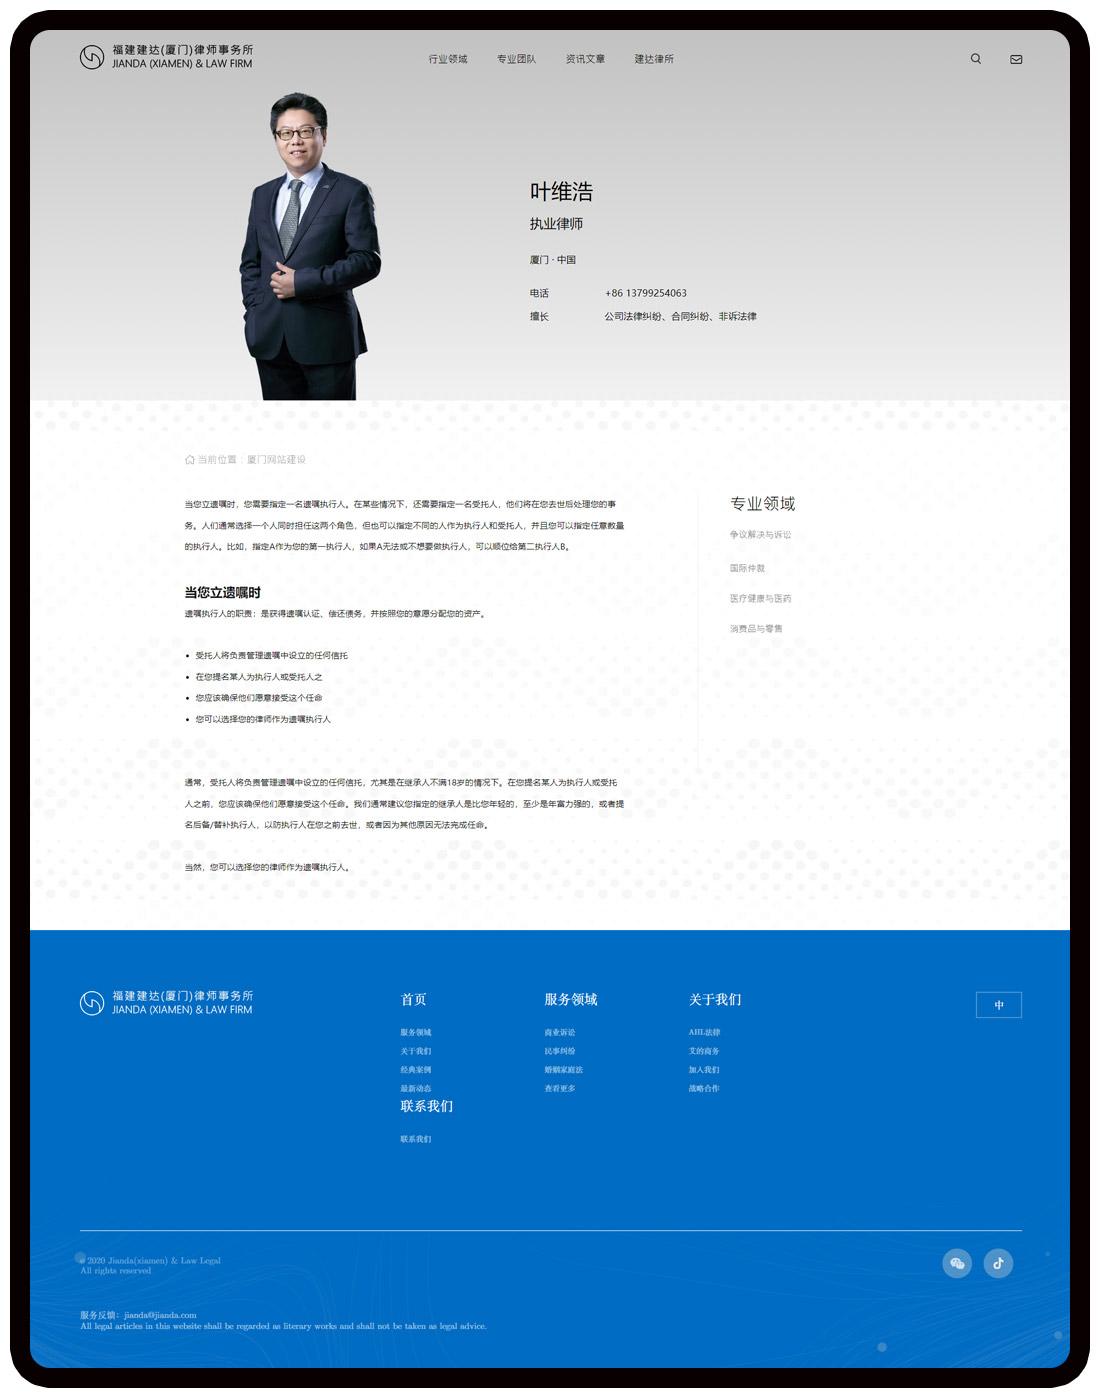 律師網站內容頁設計風格